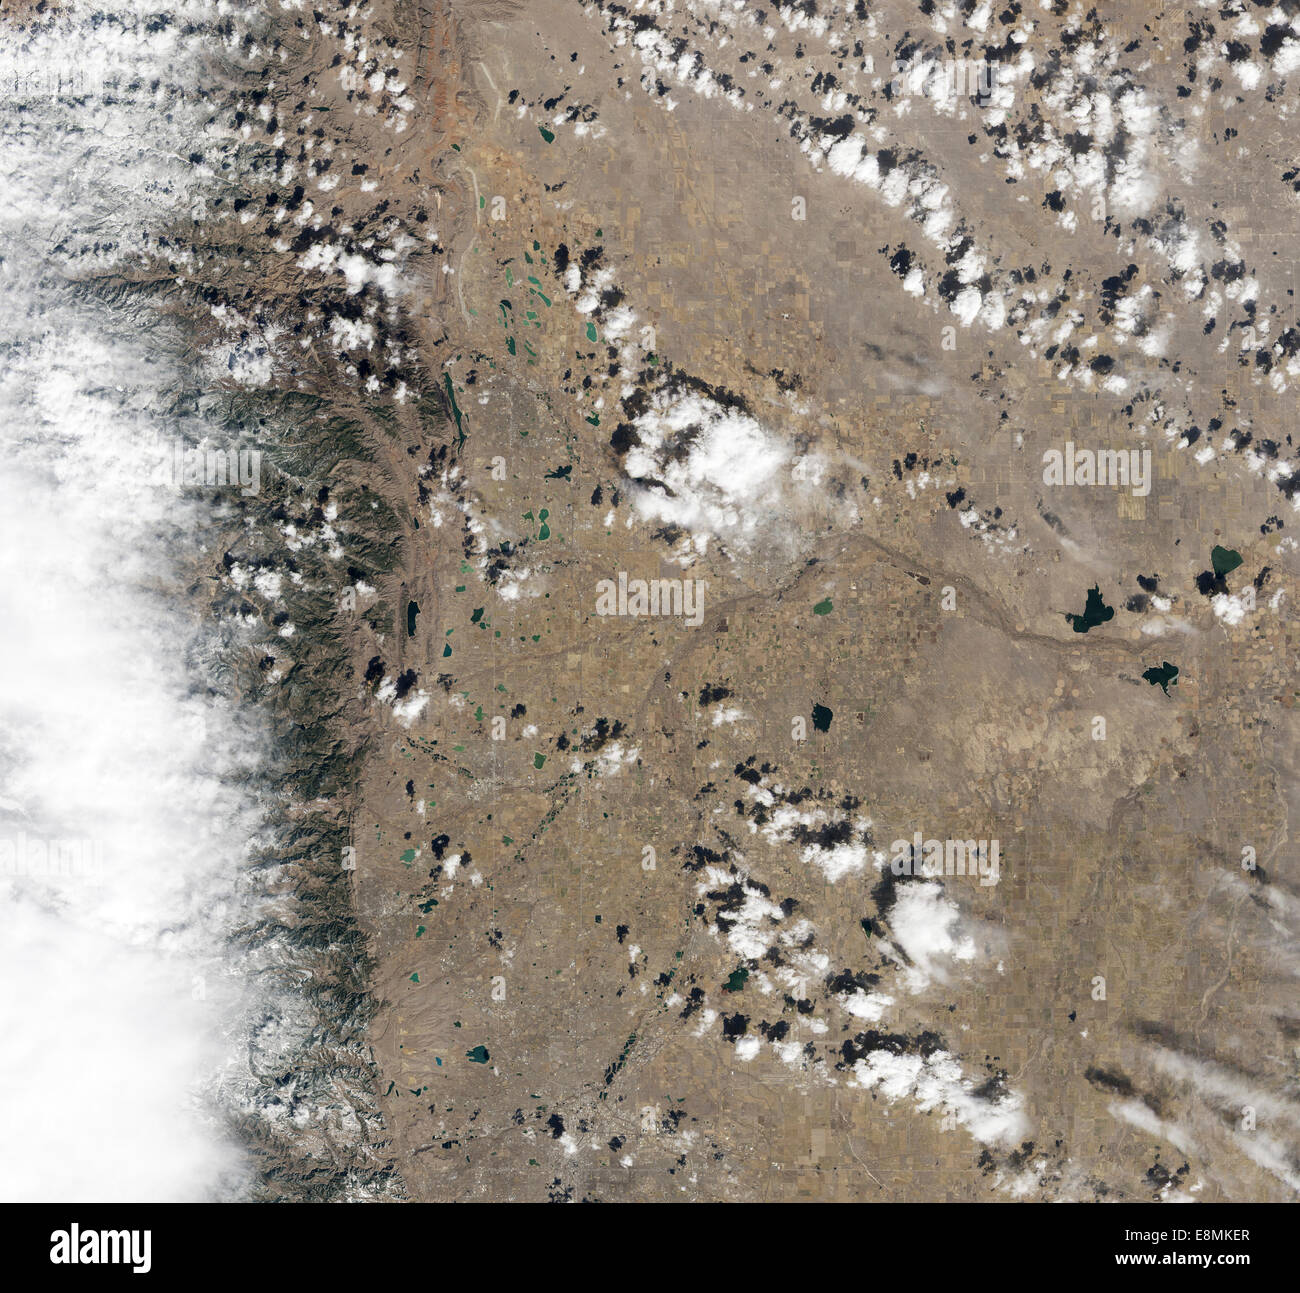 18 mars 2013 - vue Satellite de Fort Collins, Colorado. La ville est une grille grise entouré par les routes sinueuses et brown yar Banque D'Images